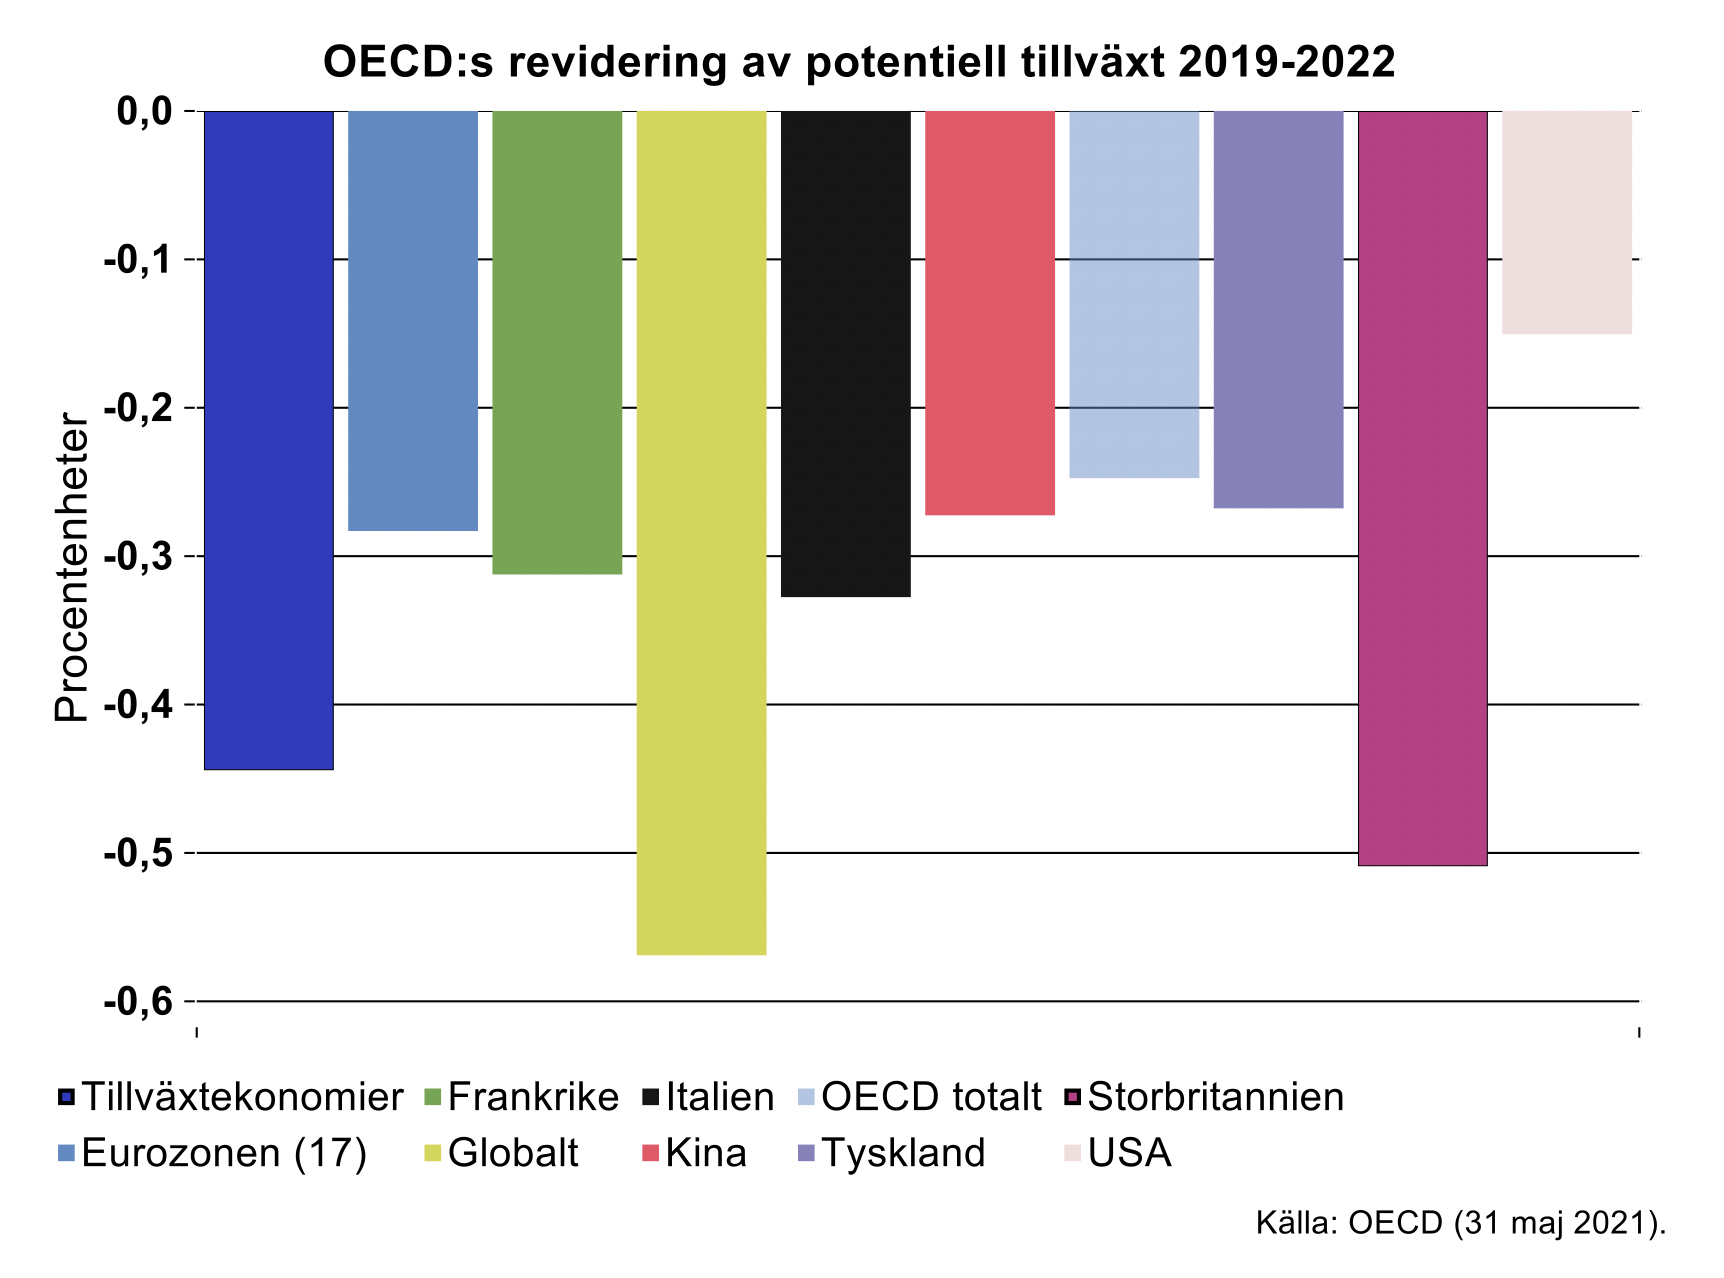 oecds-reviderings-av-potentiell-tillvaxt-2019-2022.png